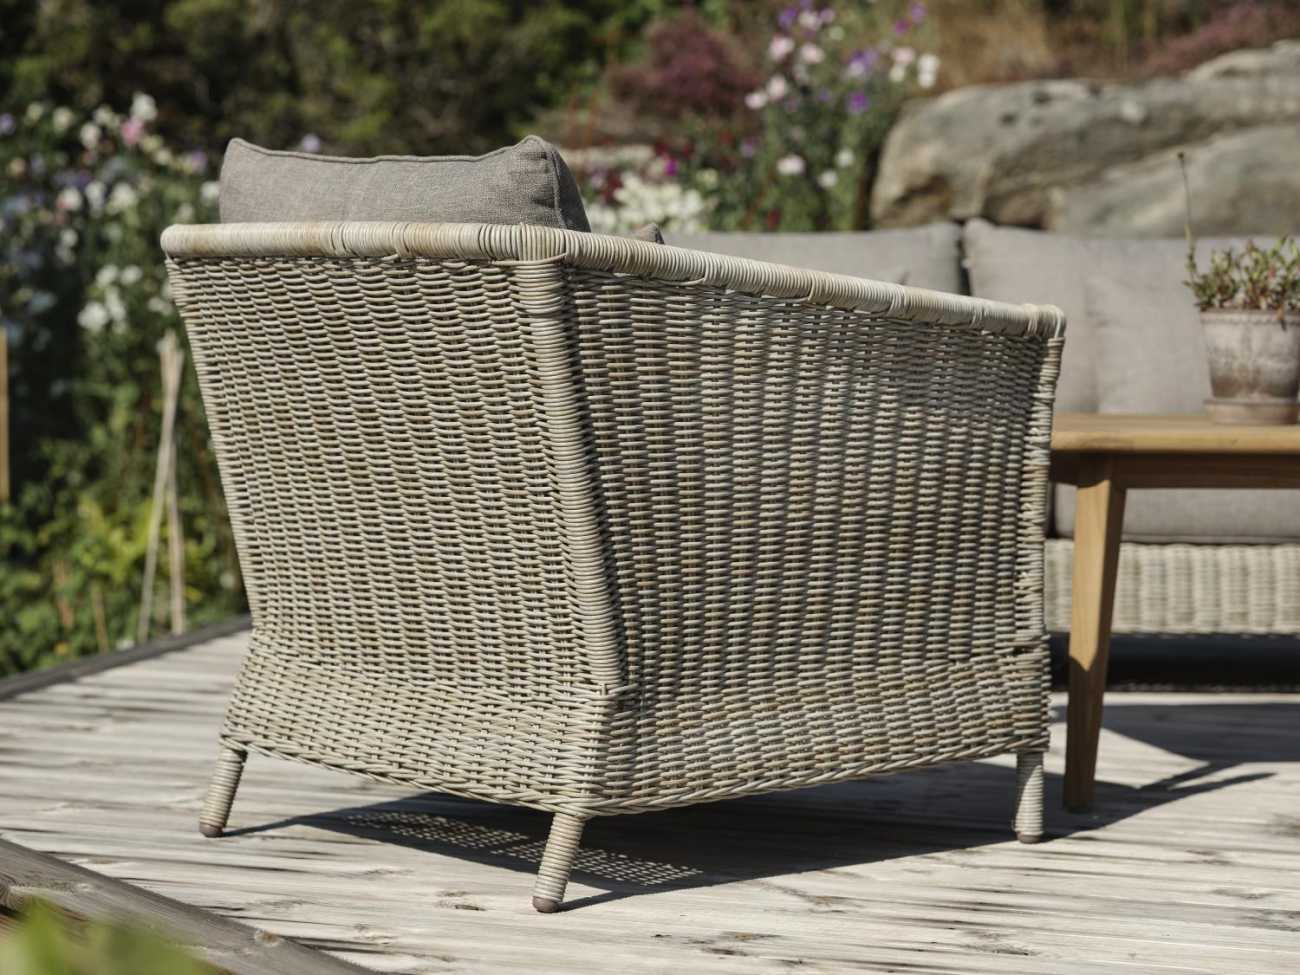 Der Gartensessel Aster überzeugt mit seinem modernen Design. Gefertigt wurde er aus Rattan, welches einen Beigen Farbton besitzt. Das Gestell ist auch aus Metall und hat eine schwarze Farbe. Die Sitzhöhe des Sessels beträgt 41 cm.